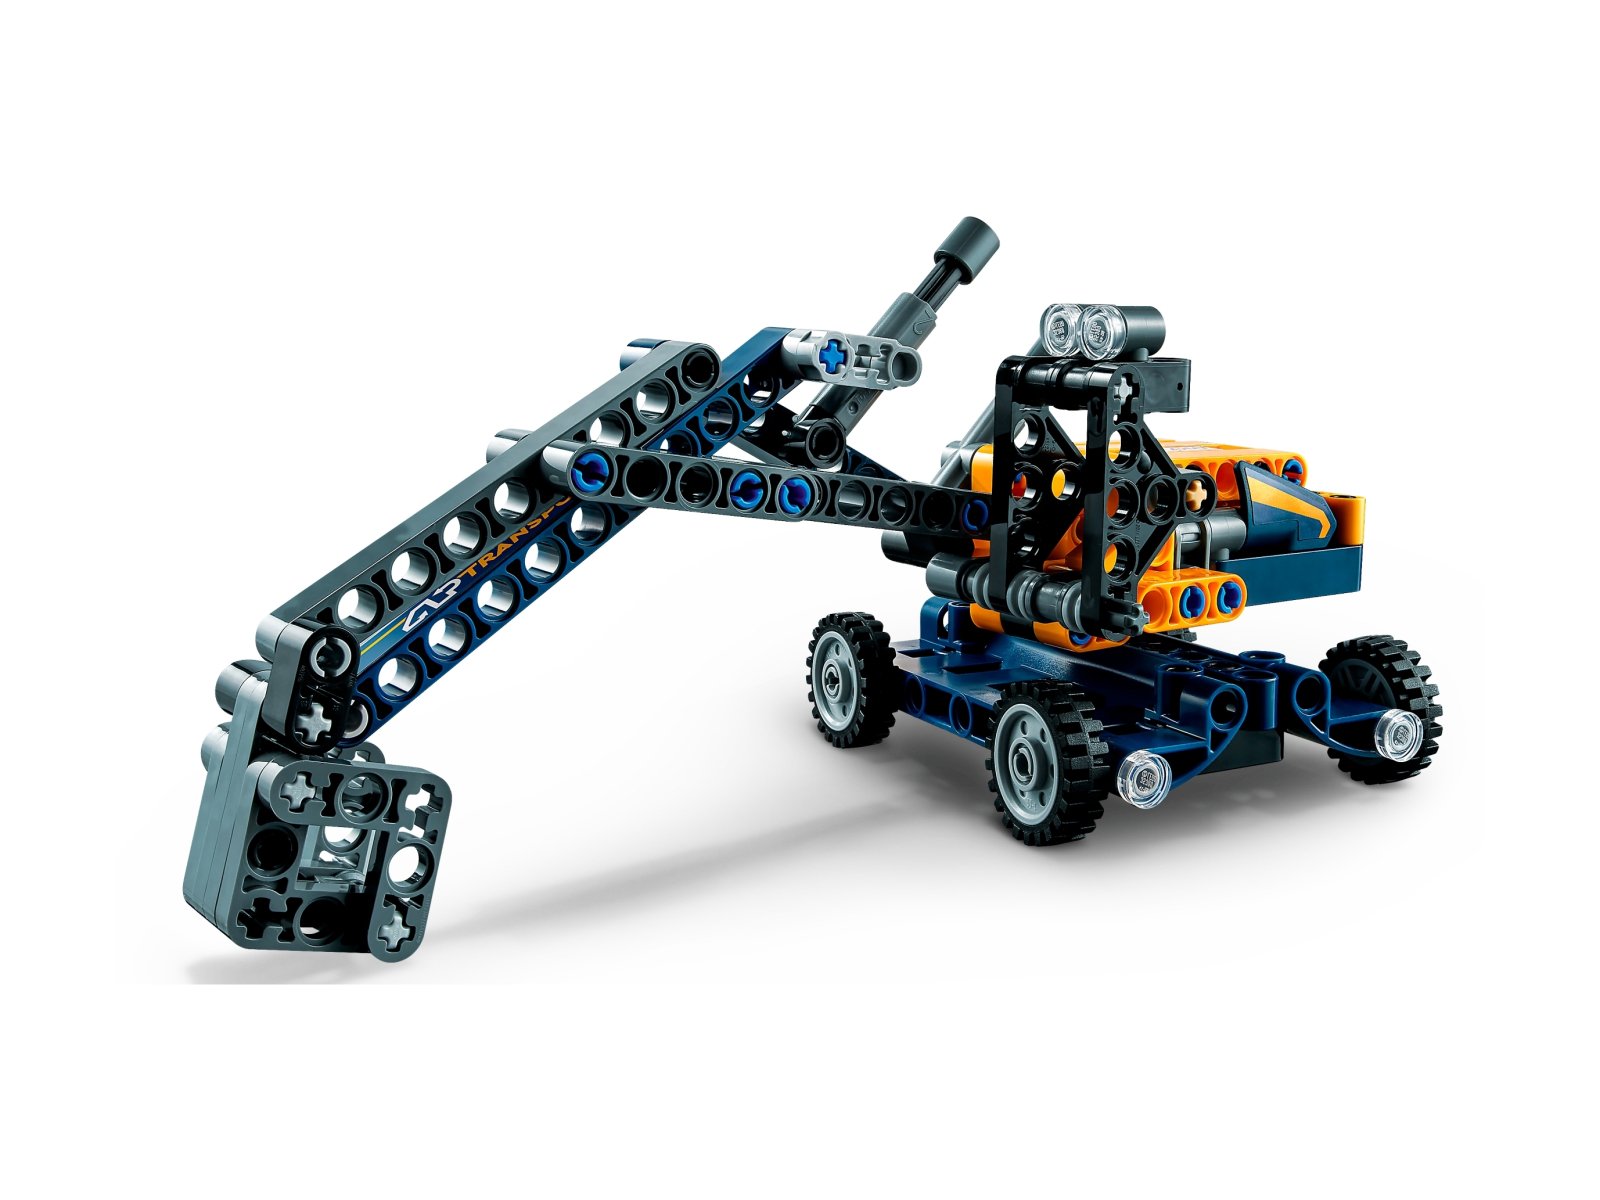 LEGO Technic Wywrotka 42147